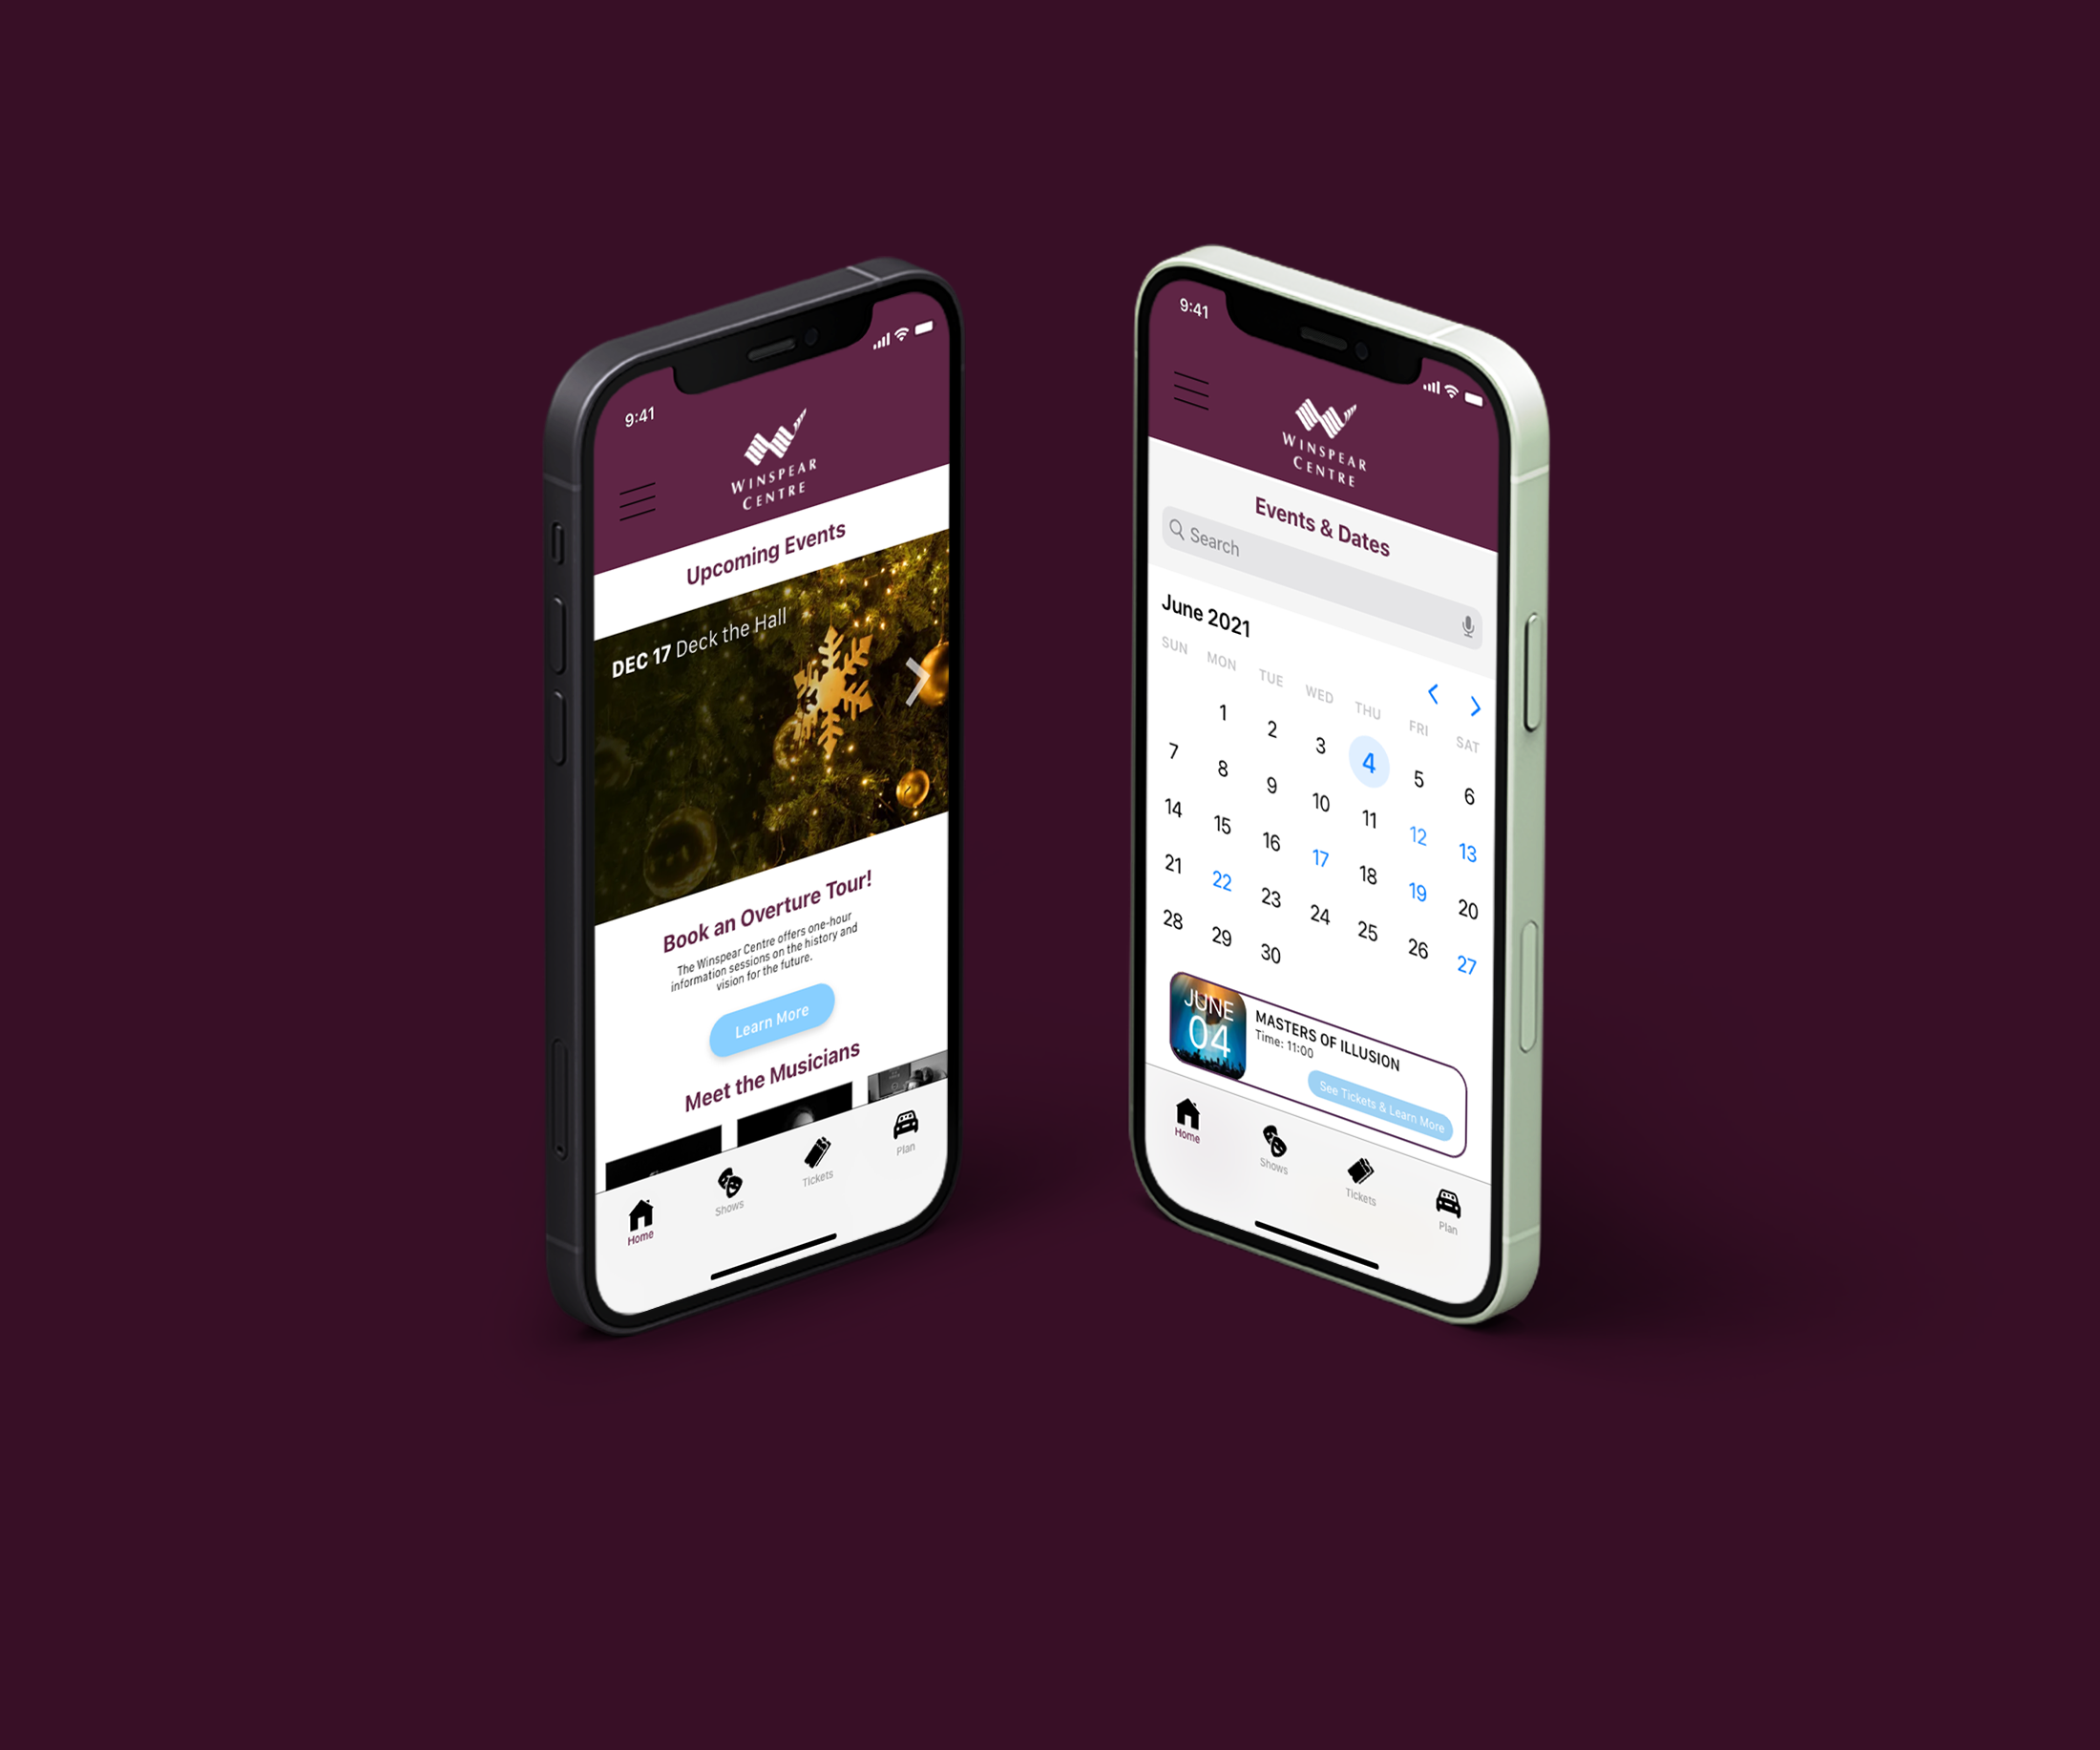 Winspear App Design - Image 2